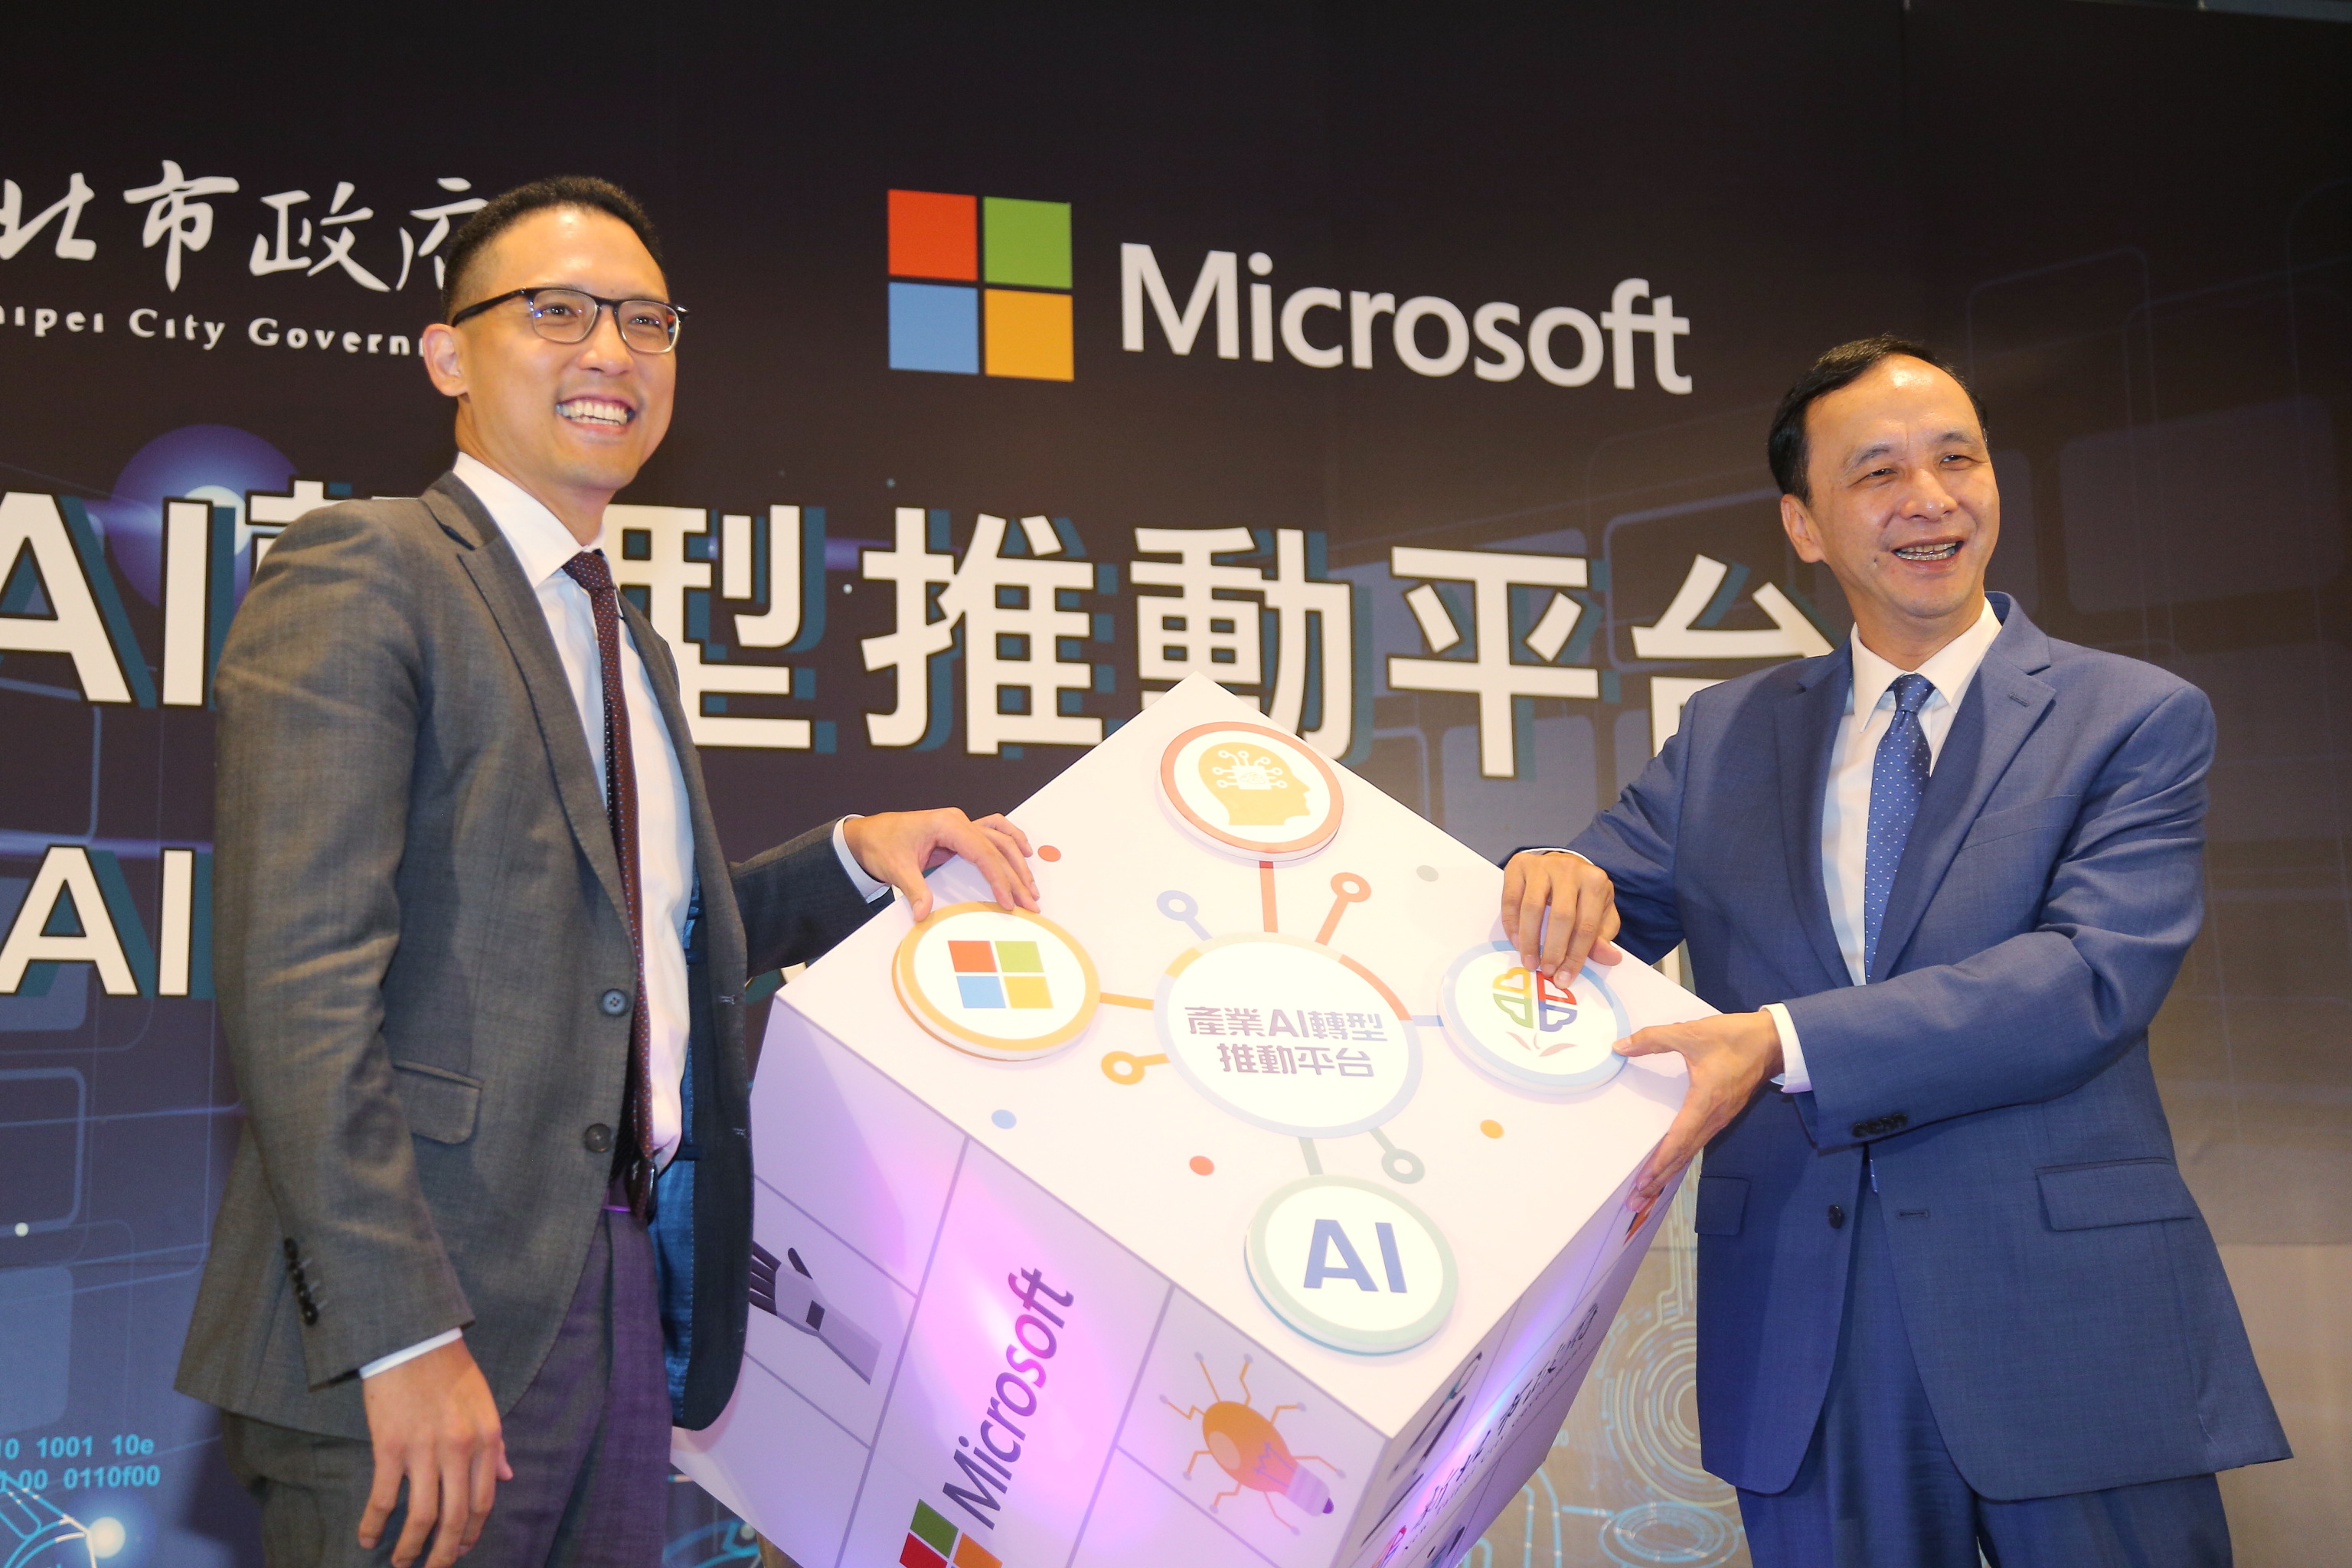 新北市攜手台灣微軟成立「AI轉型推動平台」，朱市長鼓勵中小企業運用AI創新數位轉型，提升產業國際競爭力